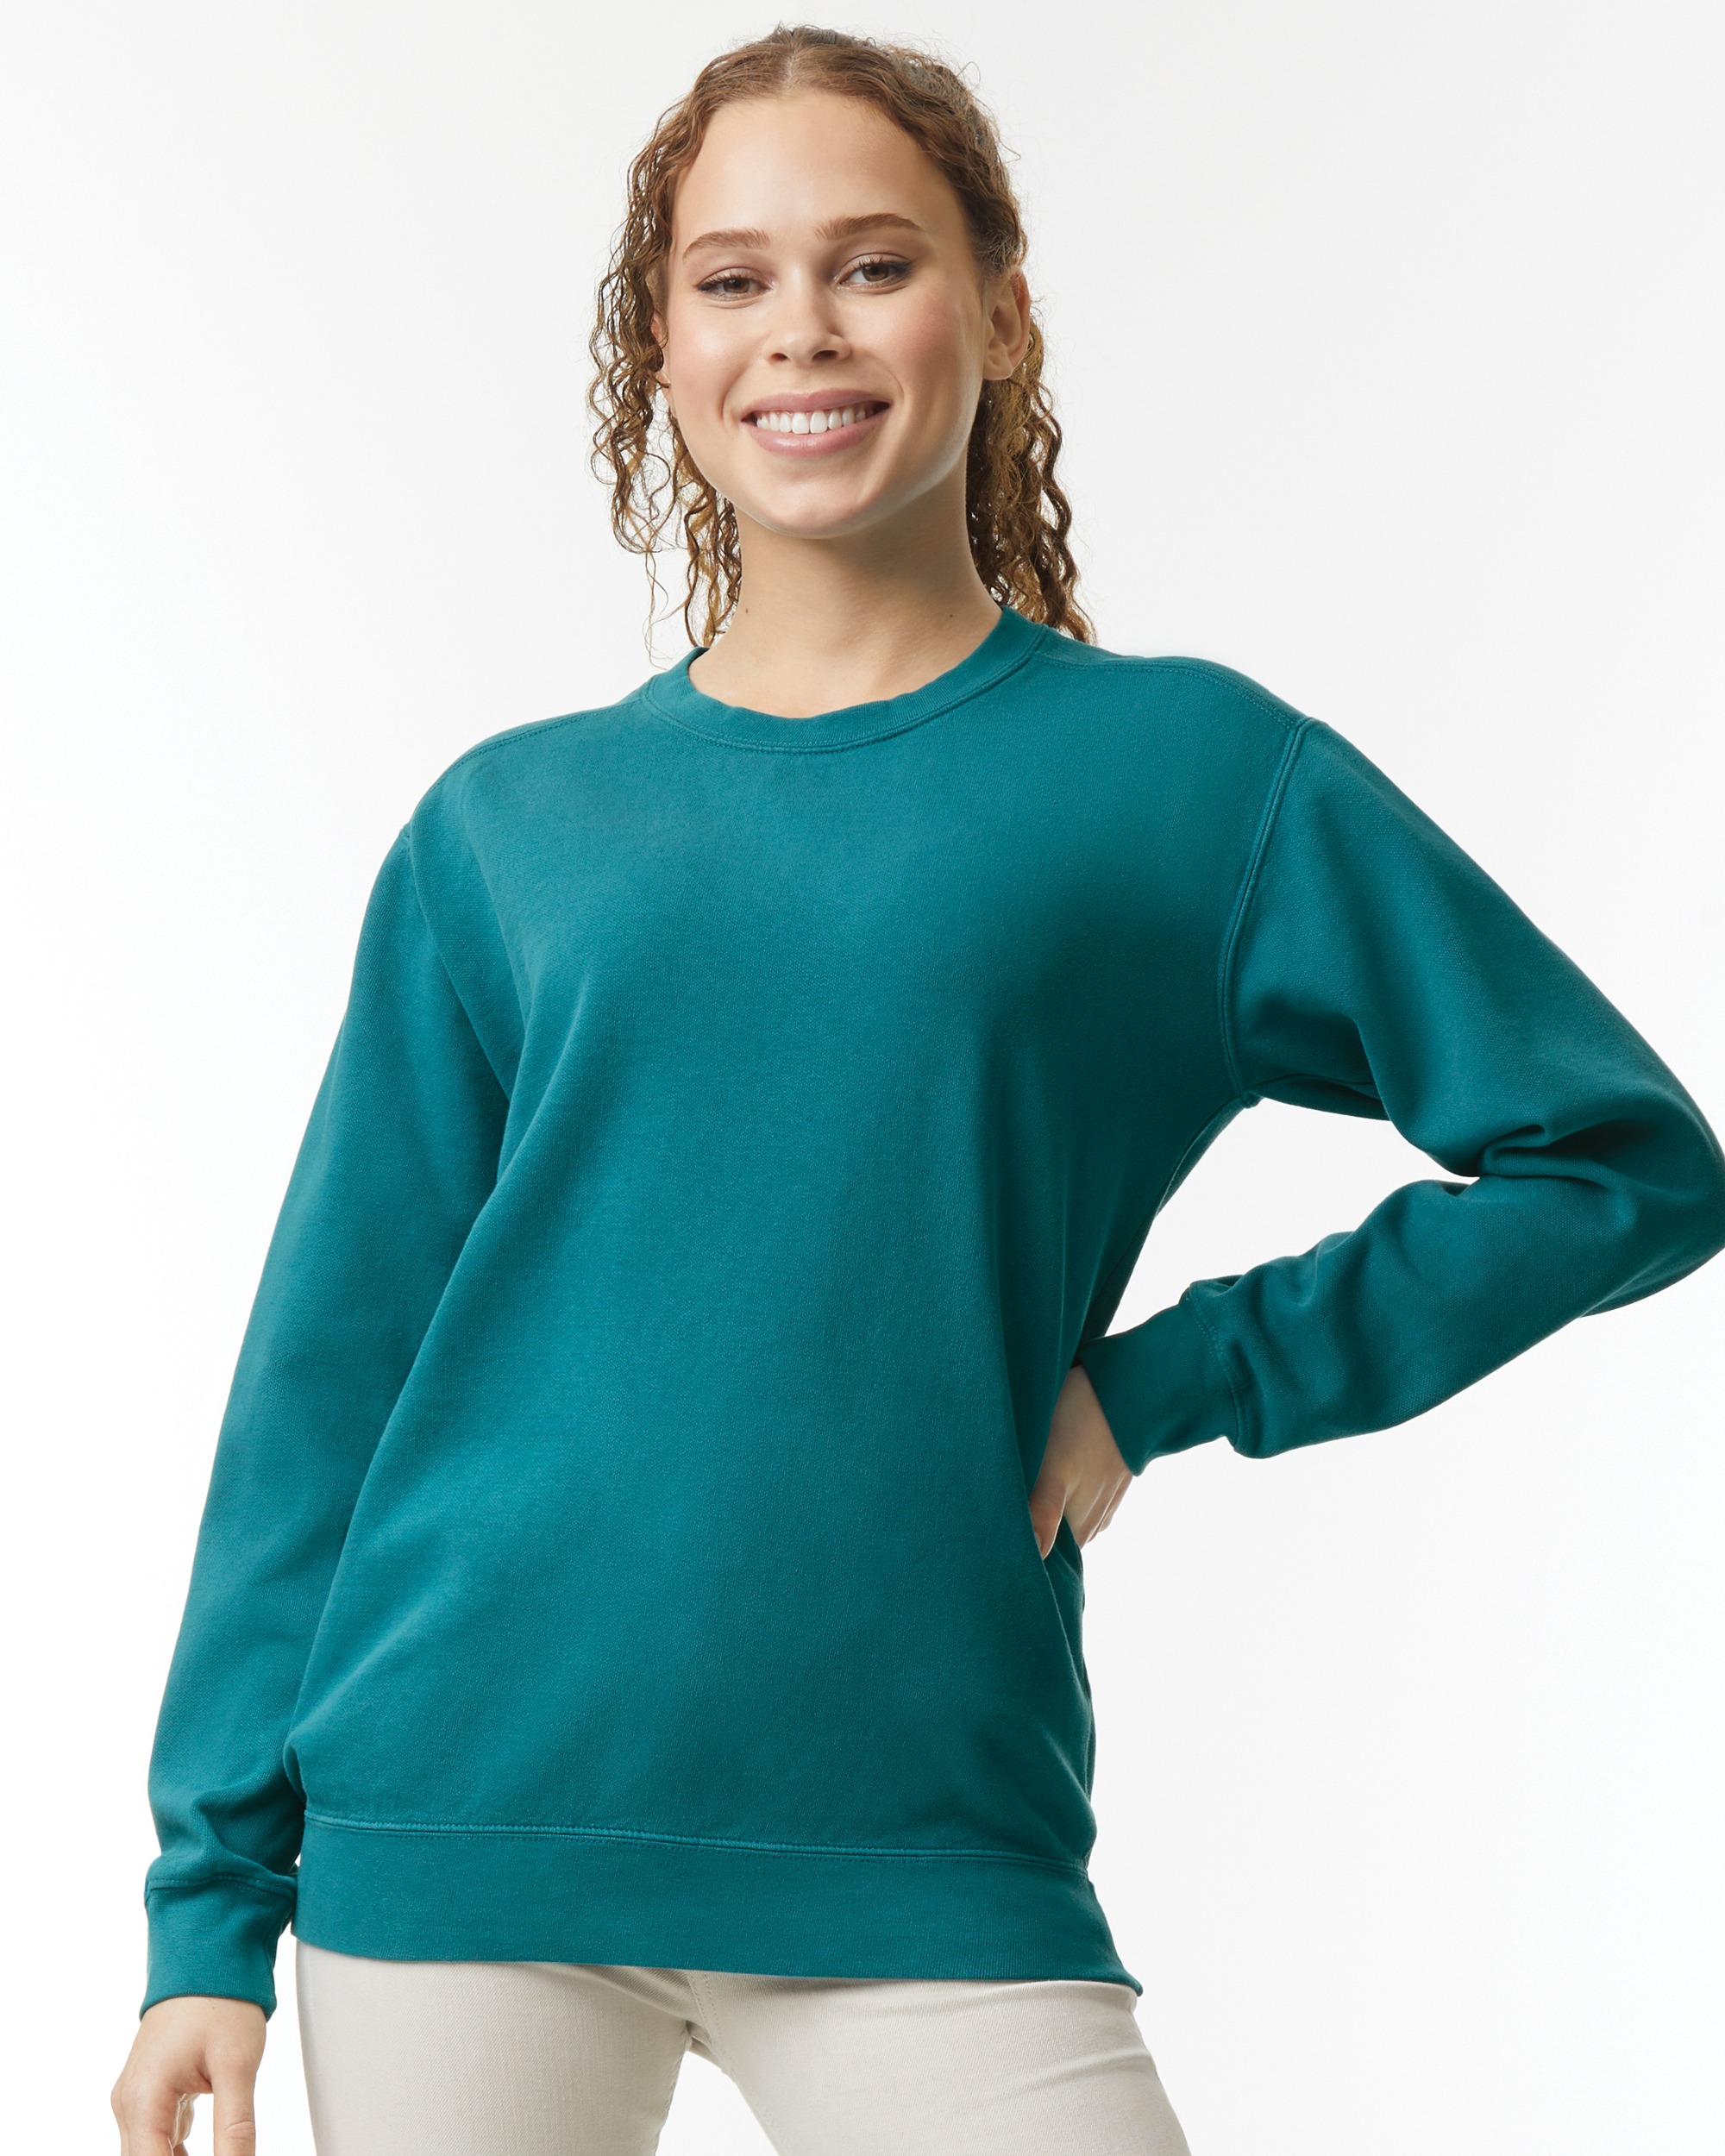 Tristar Terracotta Sweatshirt Comfort Colors – Give Her Six